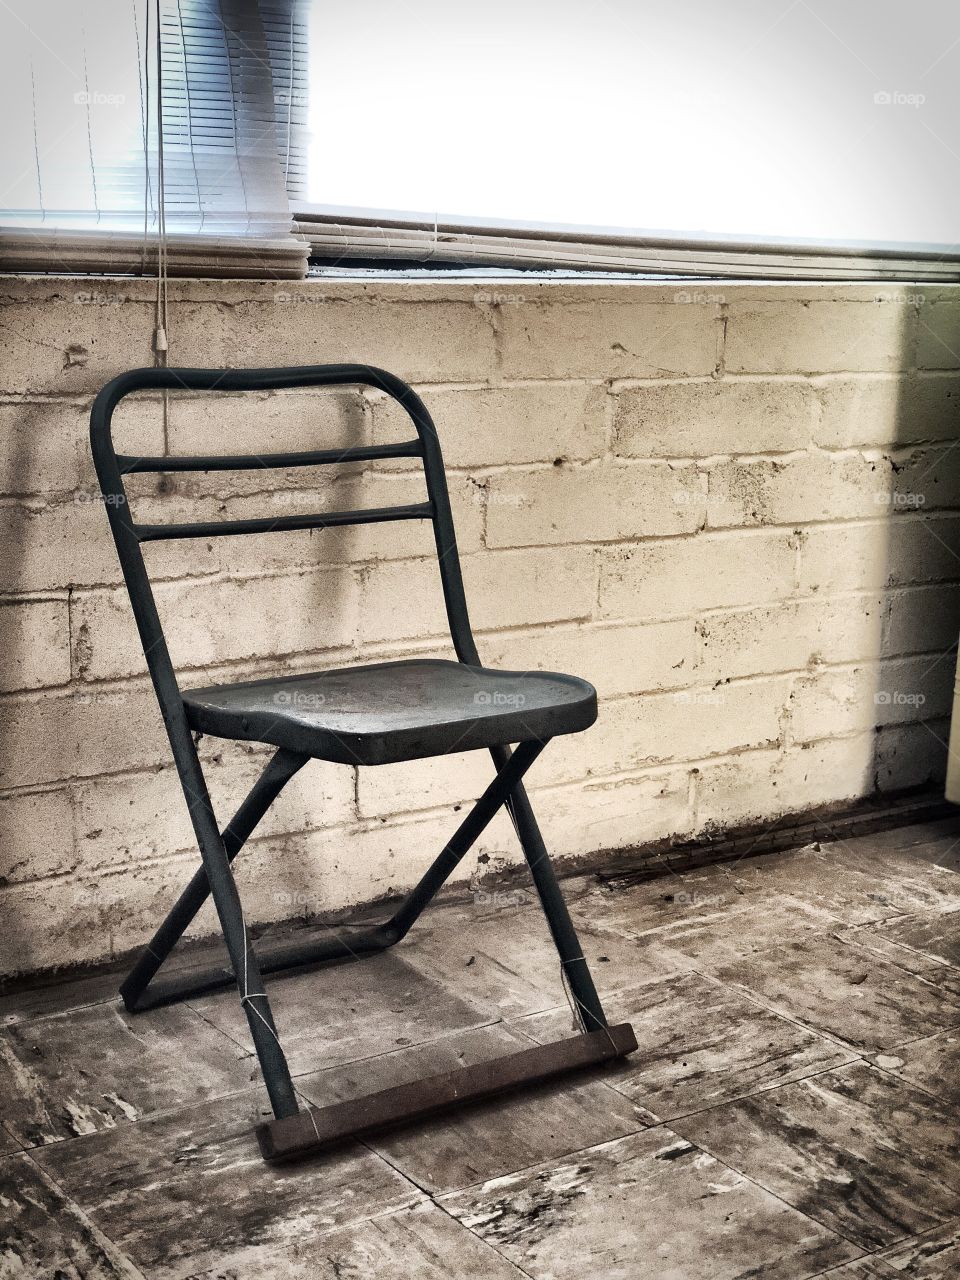 Old vintage chair